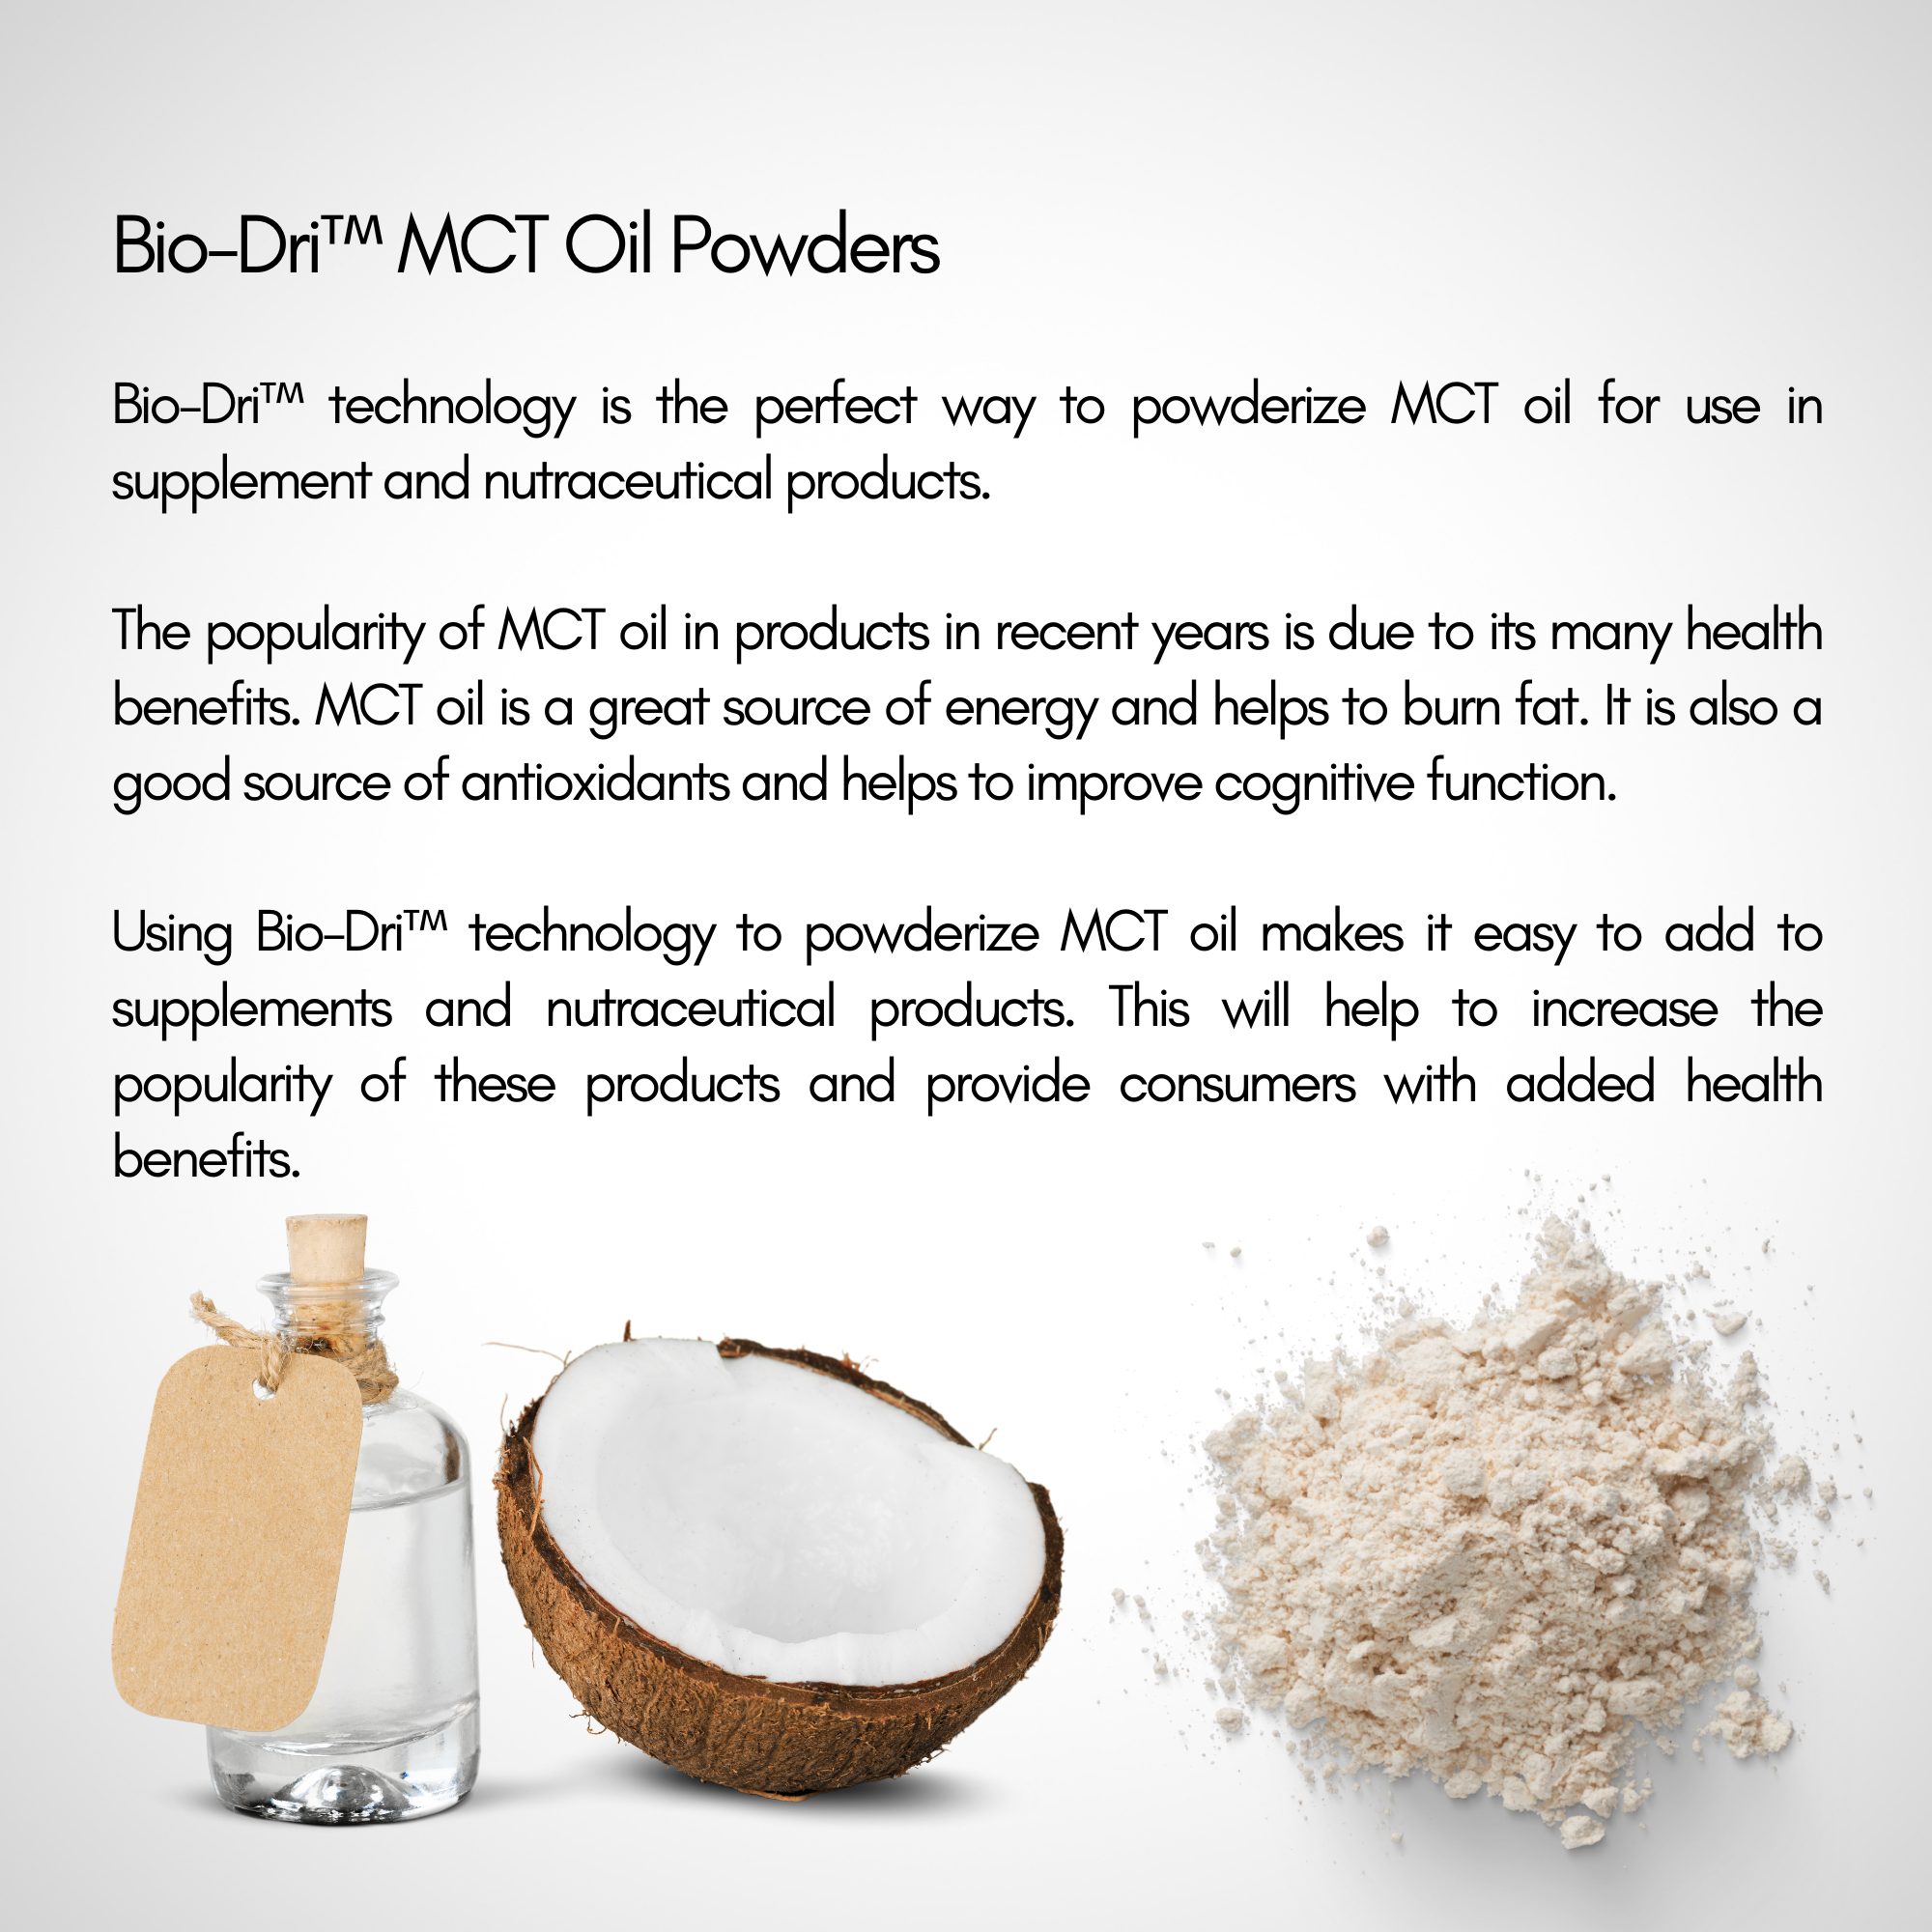 bio-dri mct oil powder